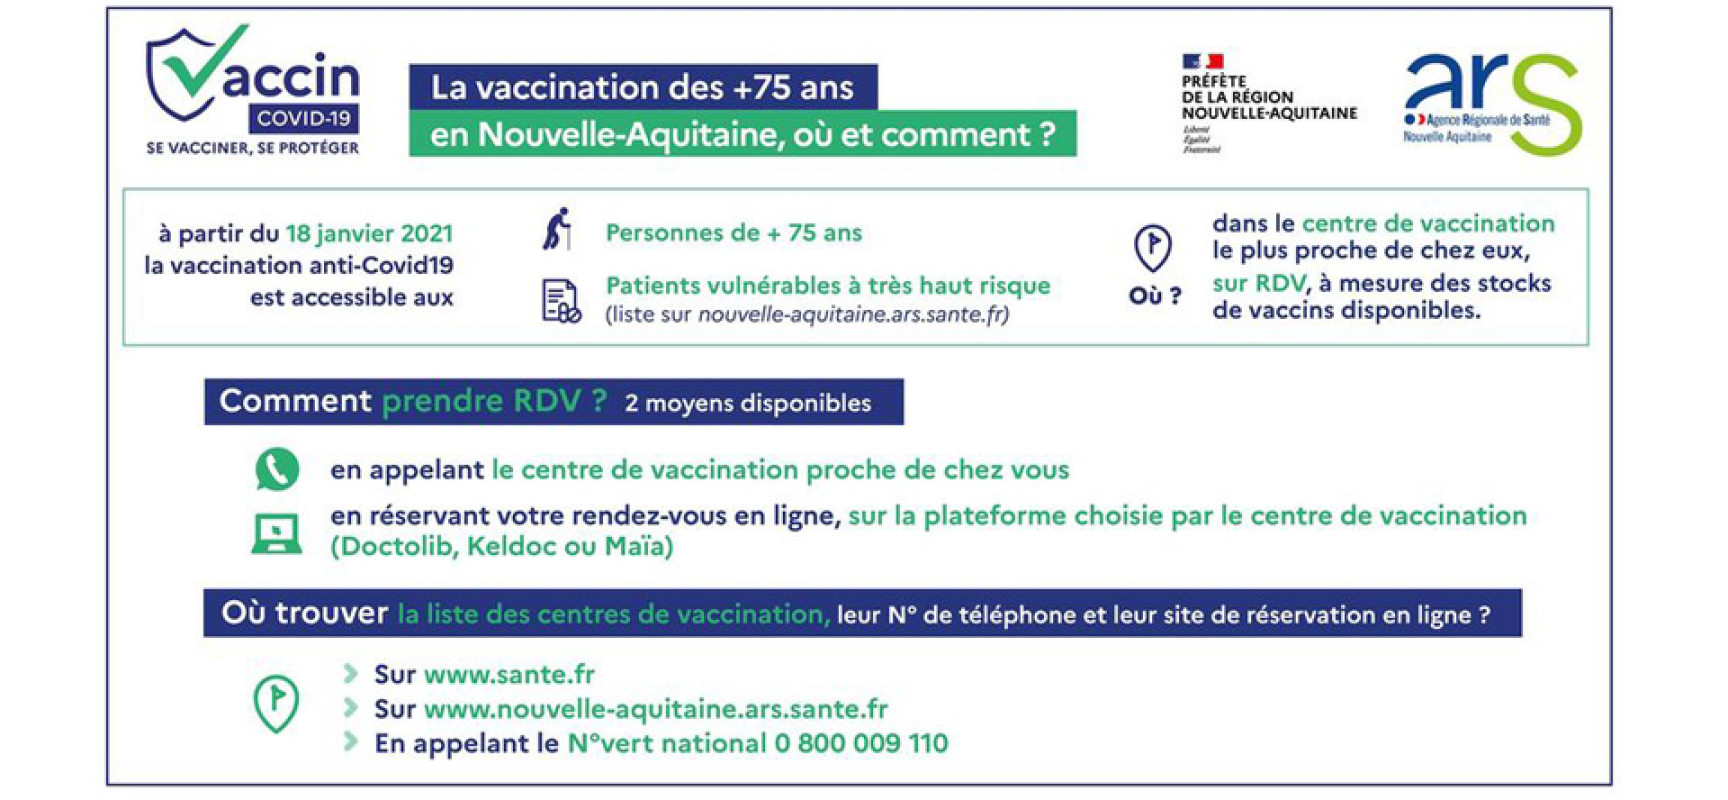 La vaccination anti-Covid19 des personnes de + 75 ans débutera le 18 janvier 2021